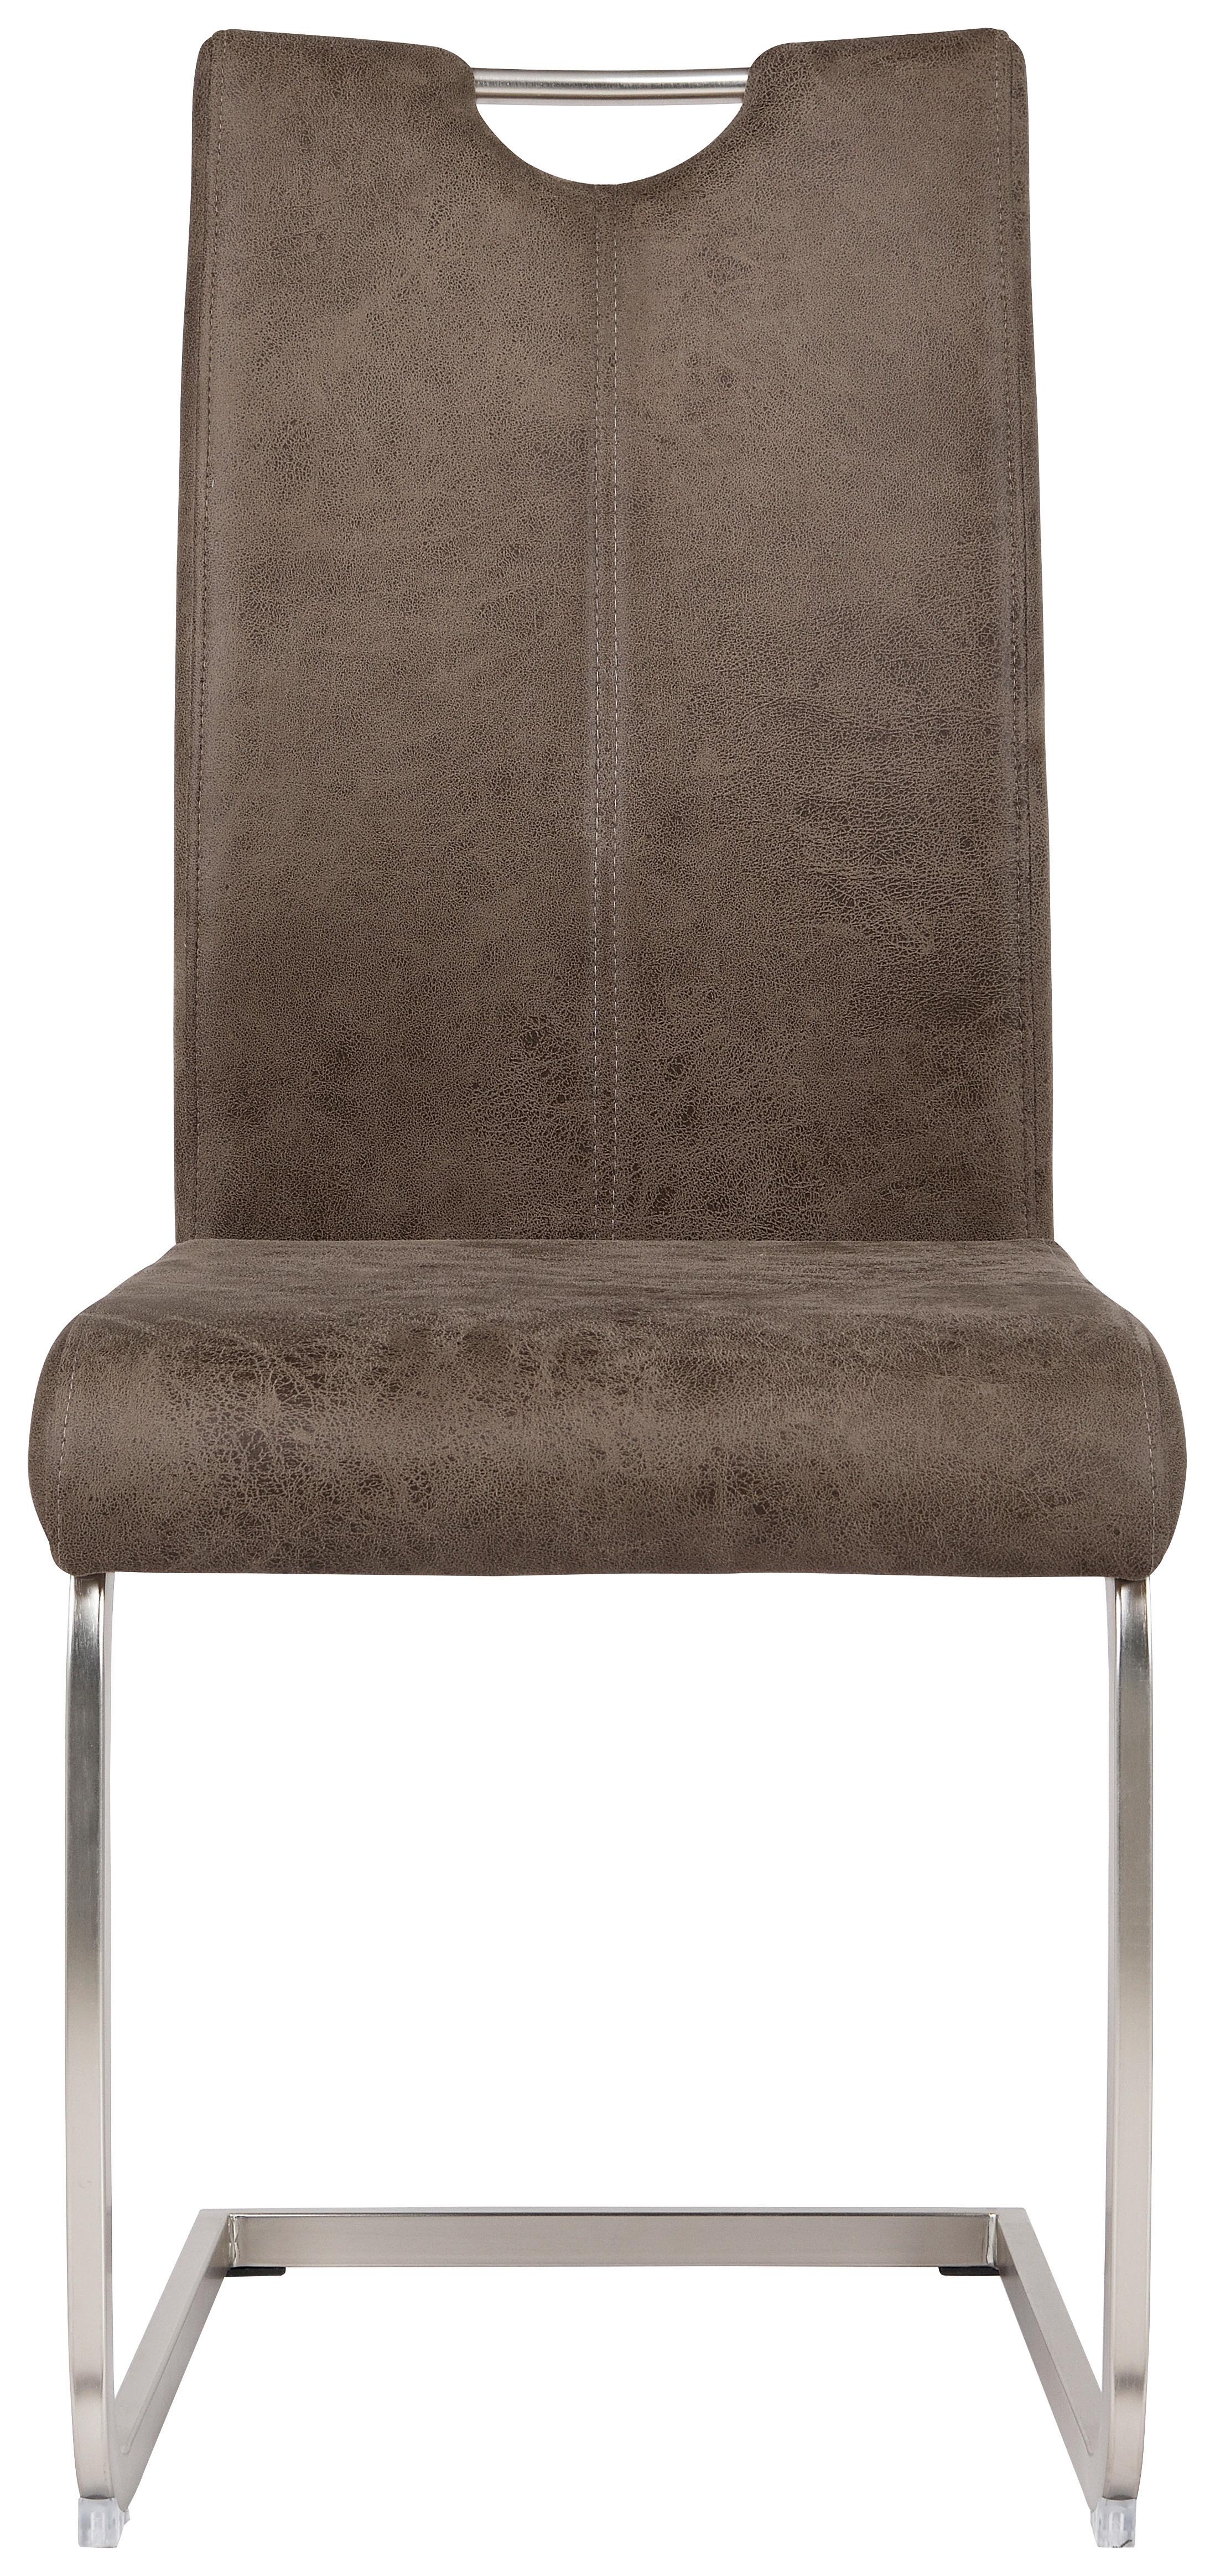 Houpací Židle Aurora - šedá/barvy niklu, Konvenční, kov/textil (43/100/59cm)